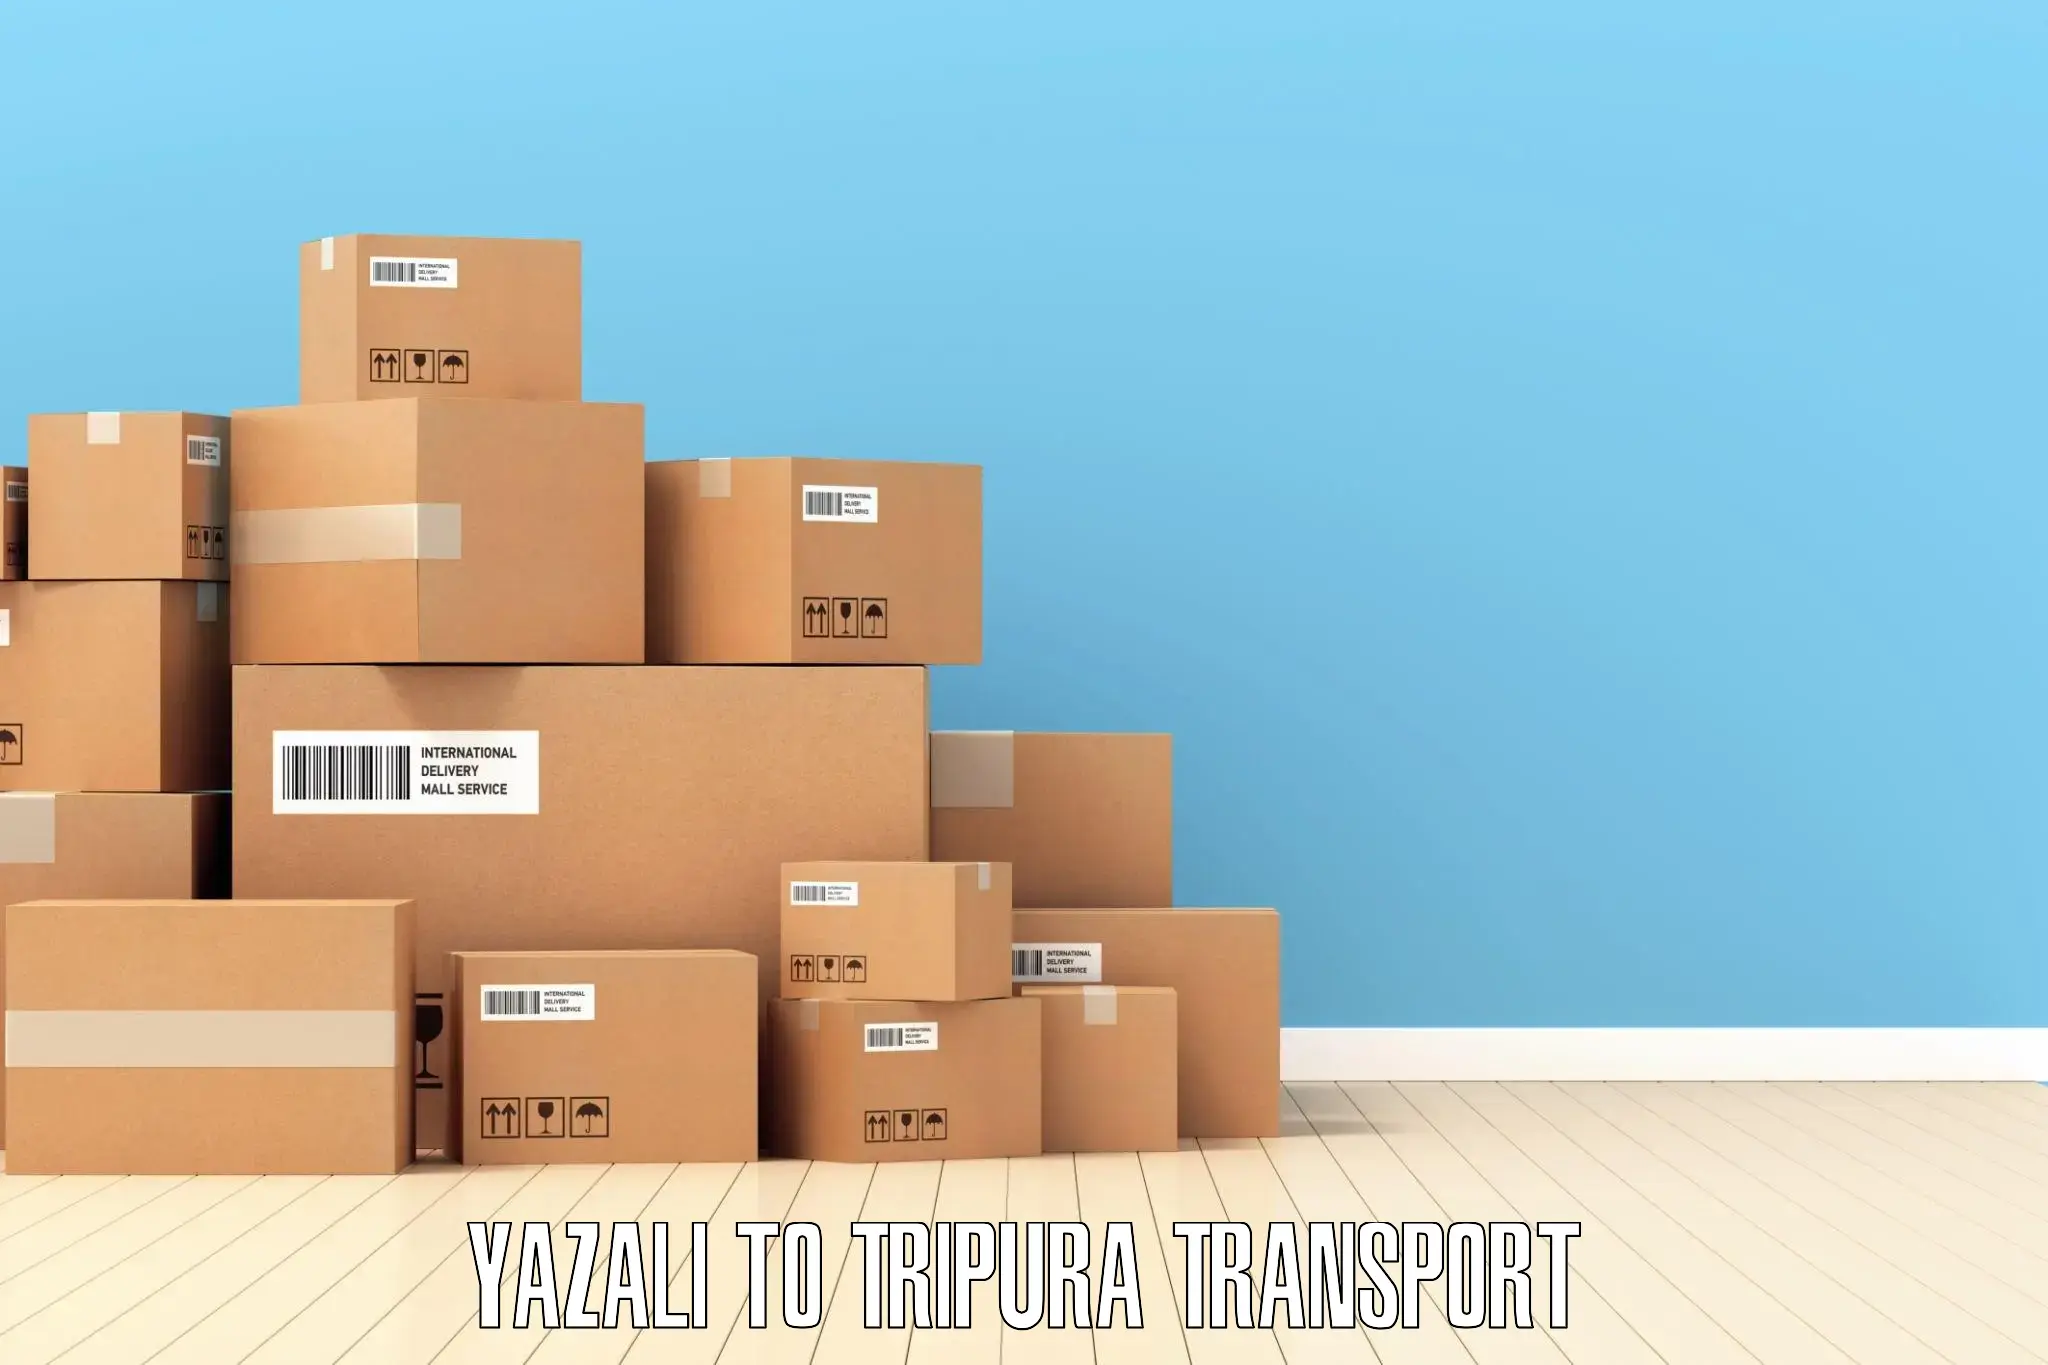 Daily parcel service transport Yazali to South Tripura